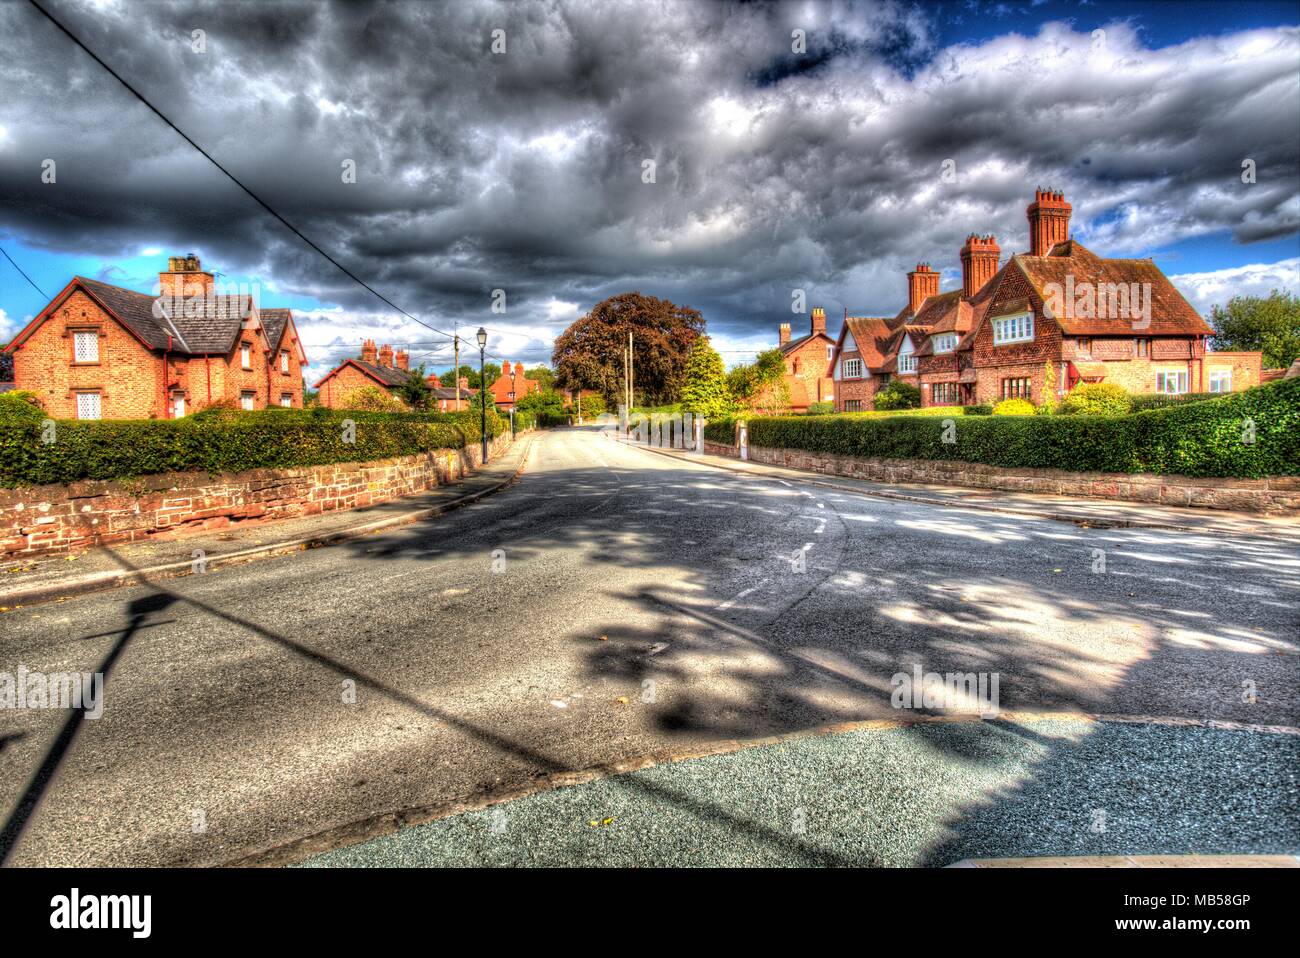 Village of Saighton, Cheshire, England. Artistic spring view of Saighton’s main thoroughfare. Stock Photo